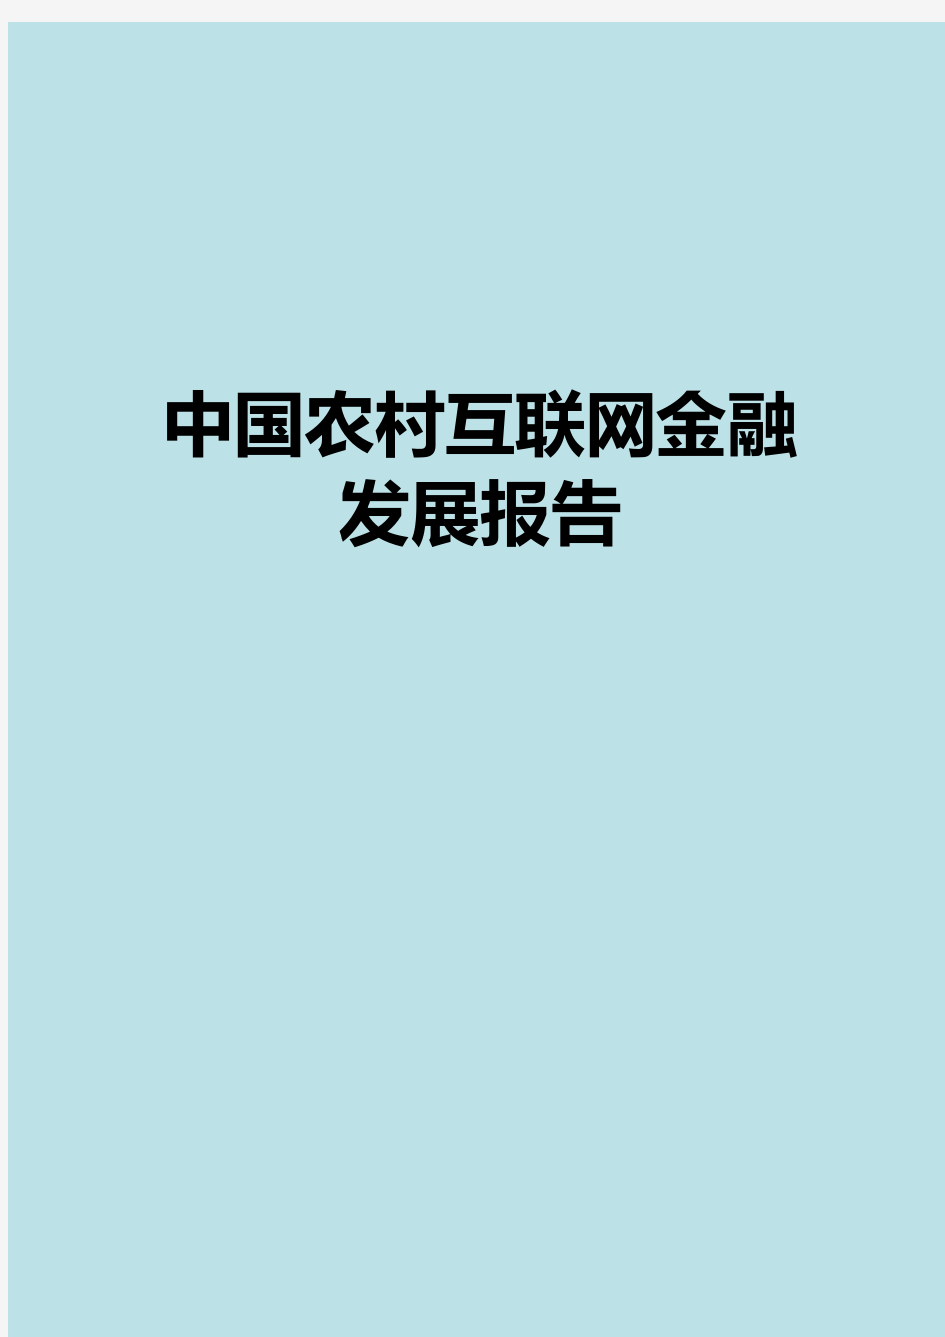 2018-2019年中国农村互联网金融发展报告